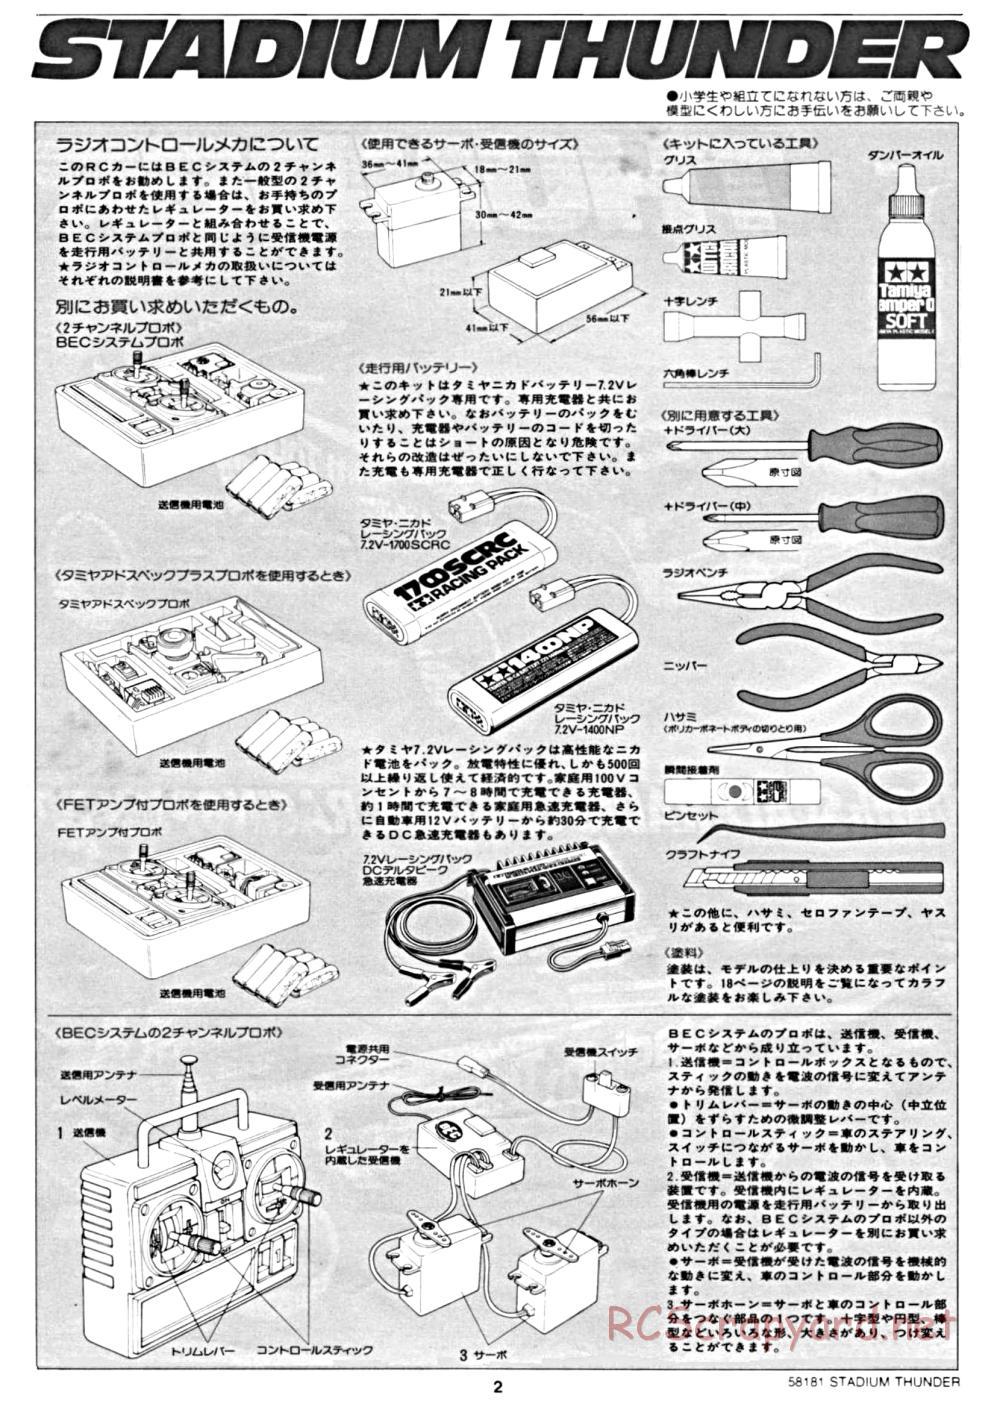 Tamiya - Stadium Thunder Chassis - Manual - Page 2